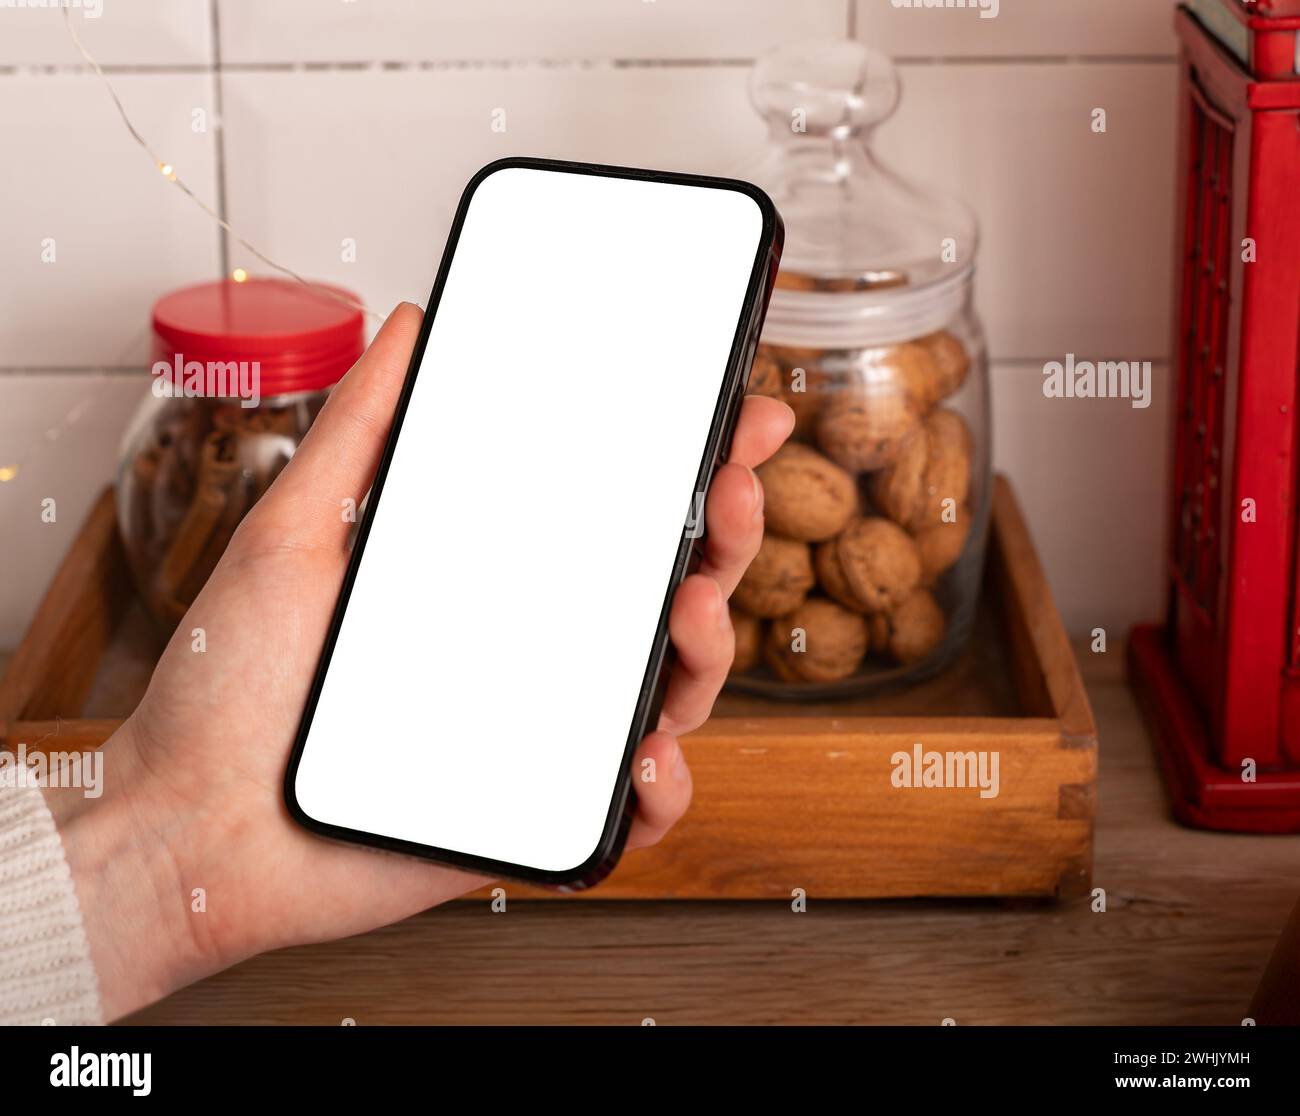 Maqueta de pantalla de smartphone en la mano, maqueta de teléfono móvil en la cocina, aplicación de cocina Foto de stock